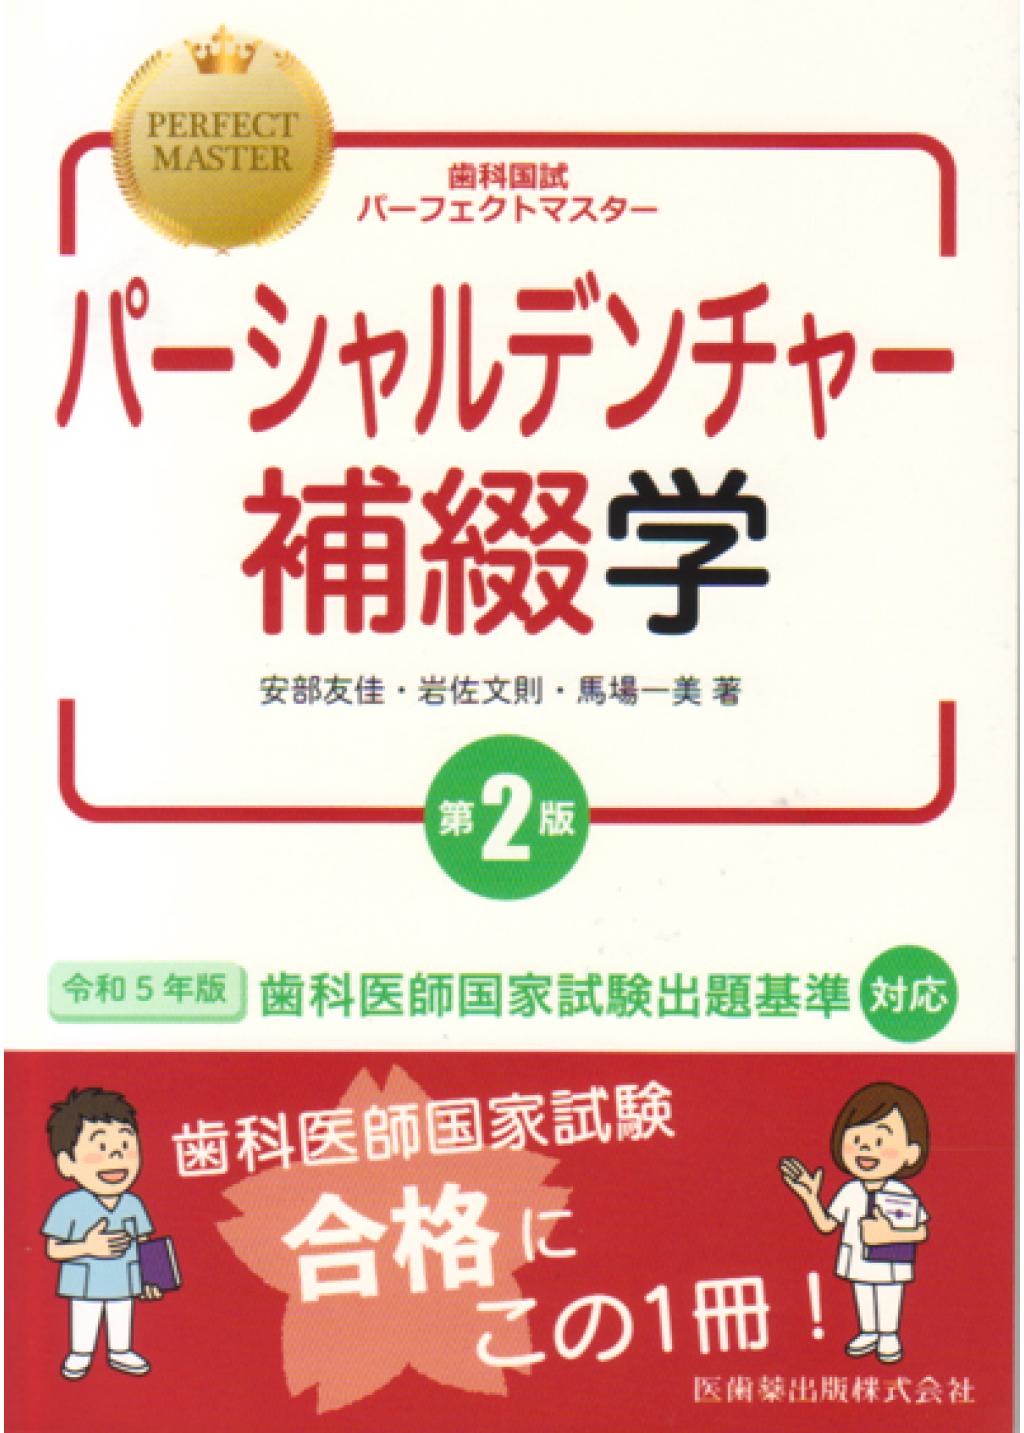 歯科国試パーフェクトマスター 8冊セット 電子書籍版 - 健康/医学